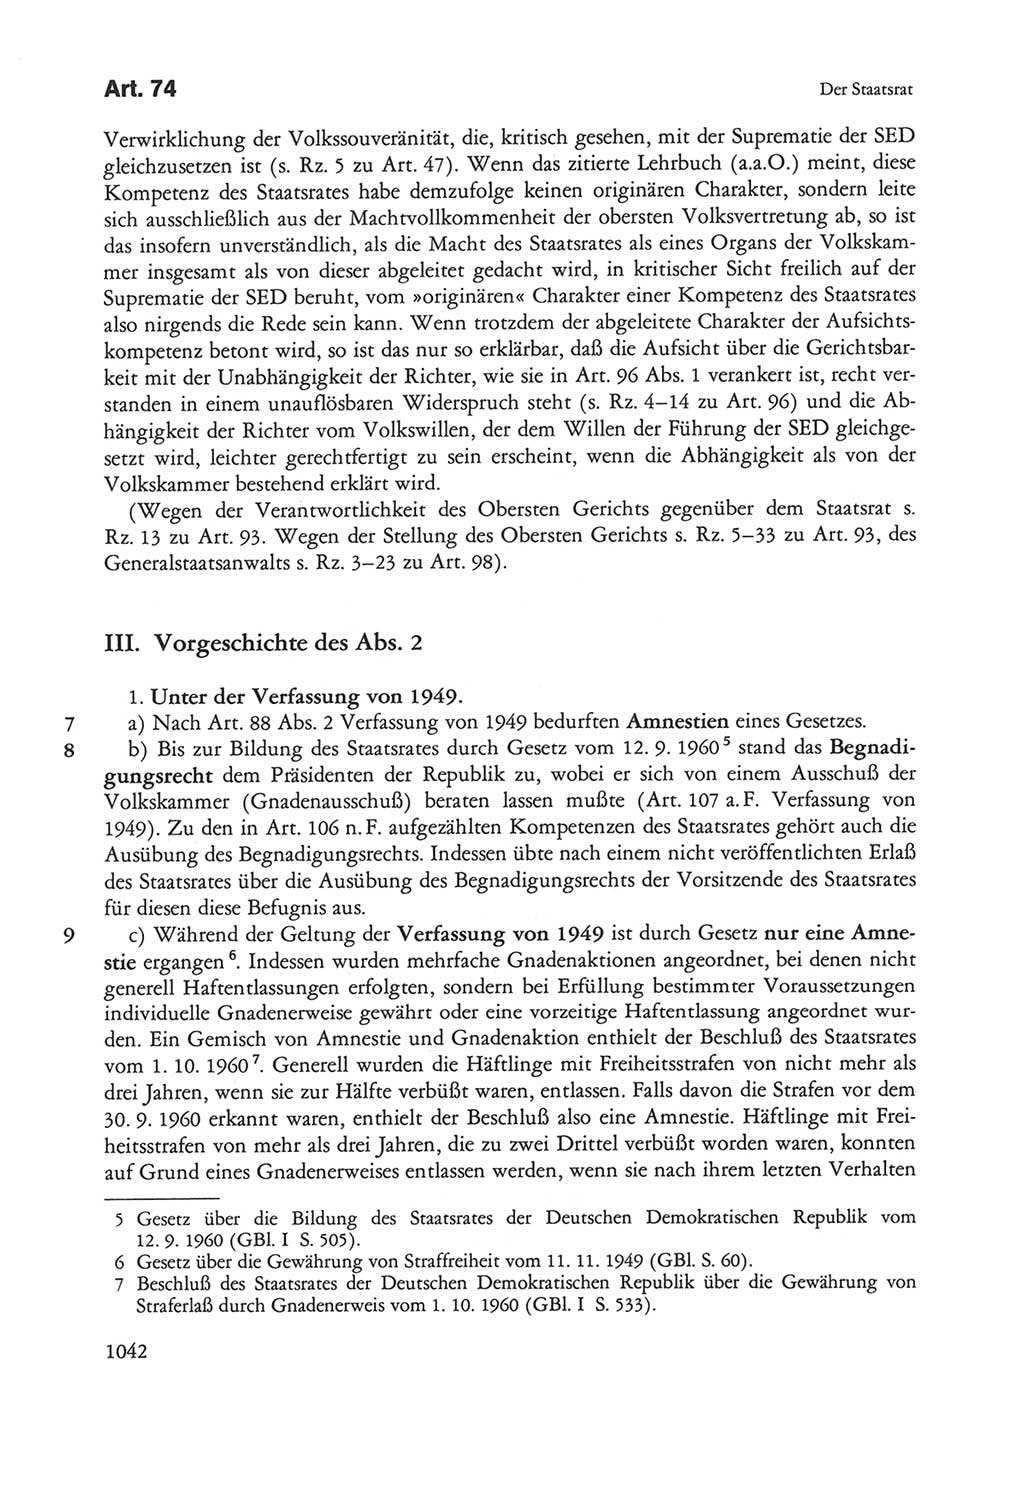 Die sozialistische Verfassung der Deutschen Demokratischen Republik (DDR), Kommentar mit einem Nachtrag 1997, Seite 1042 (Soz. Verf. DDR Komm. Nachtr. 1997, S. 1042)